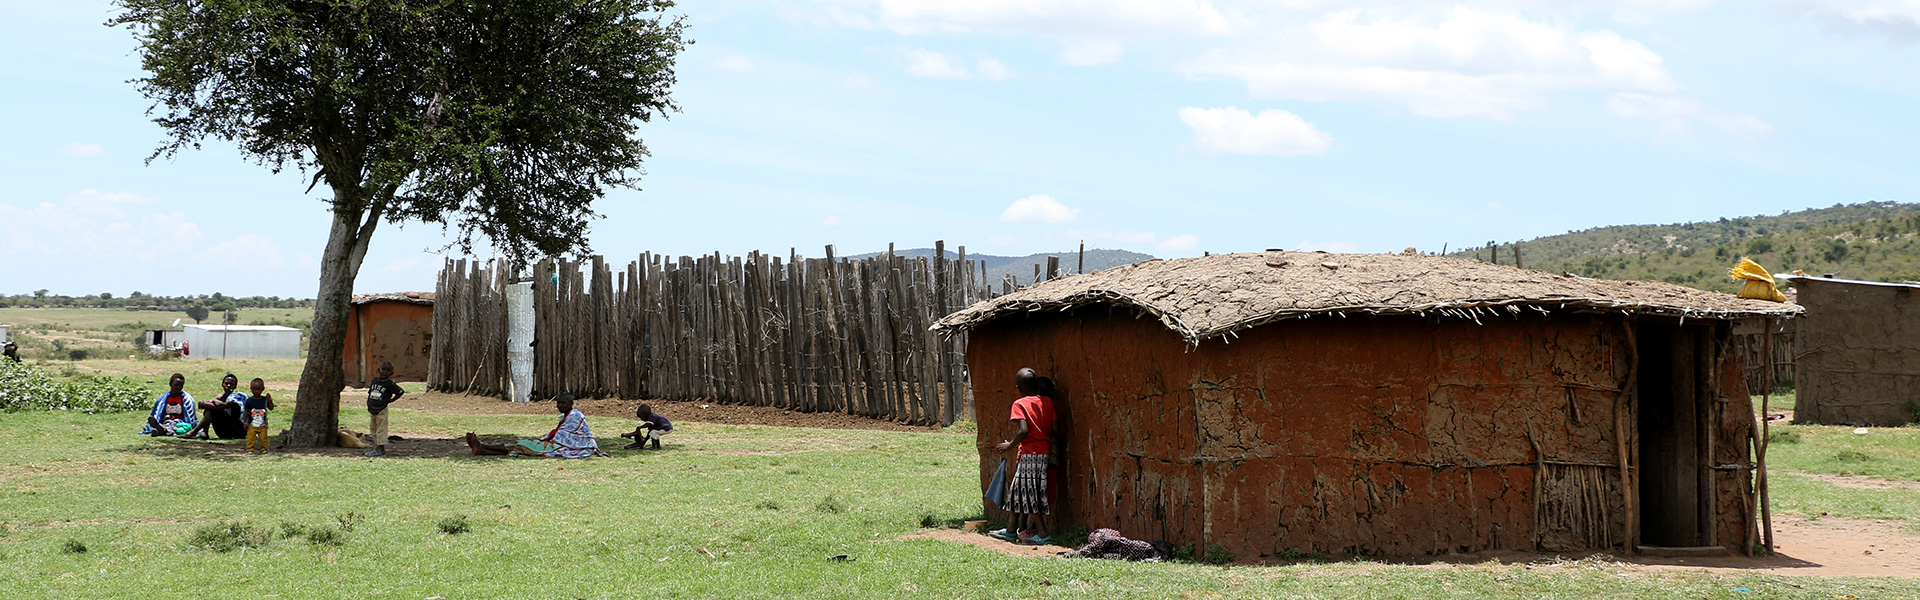 kenya-masai-mara-naboisho-concervancy-village